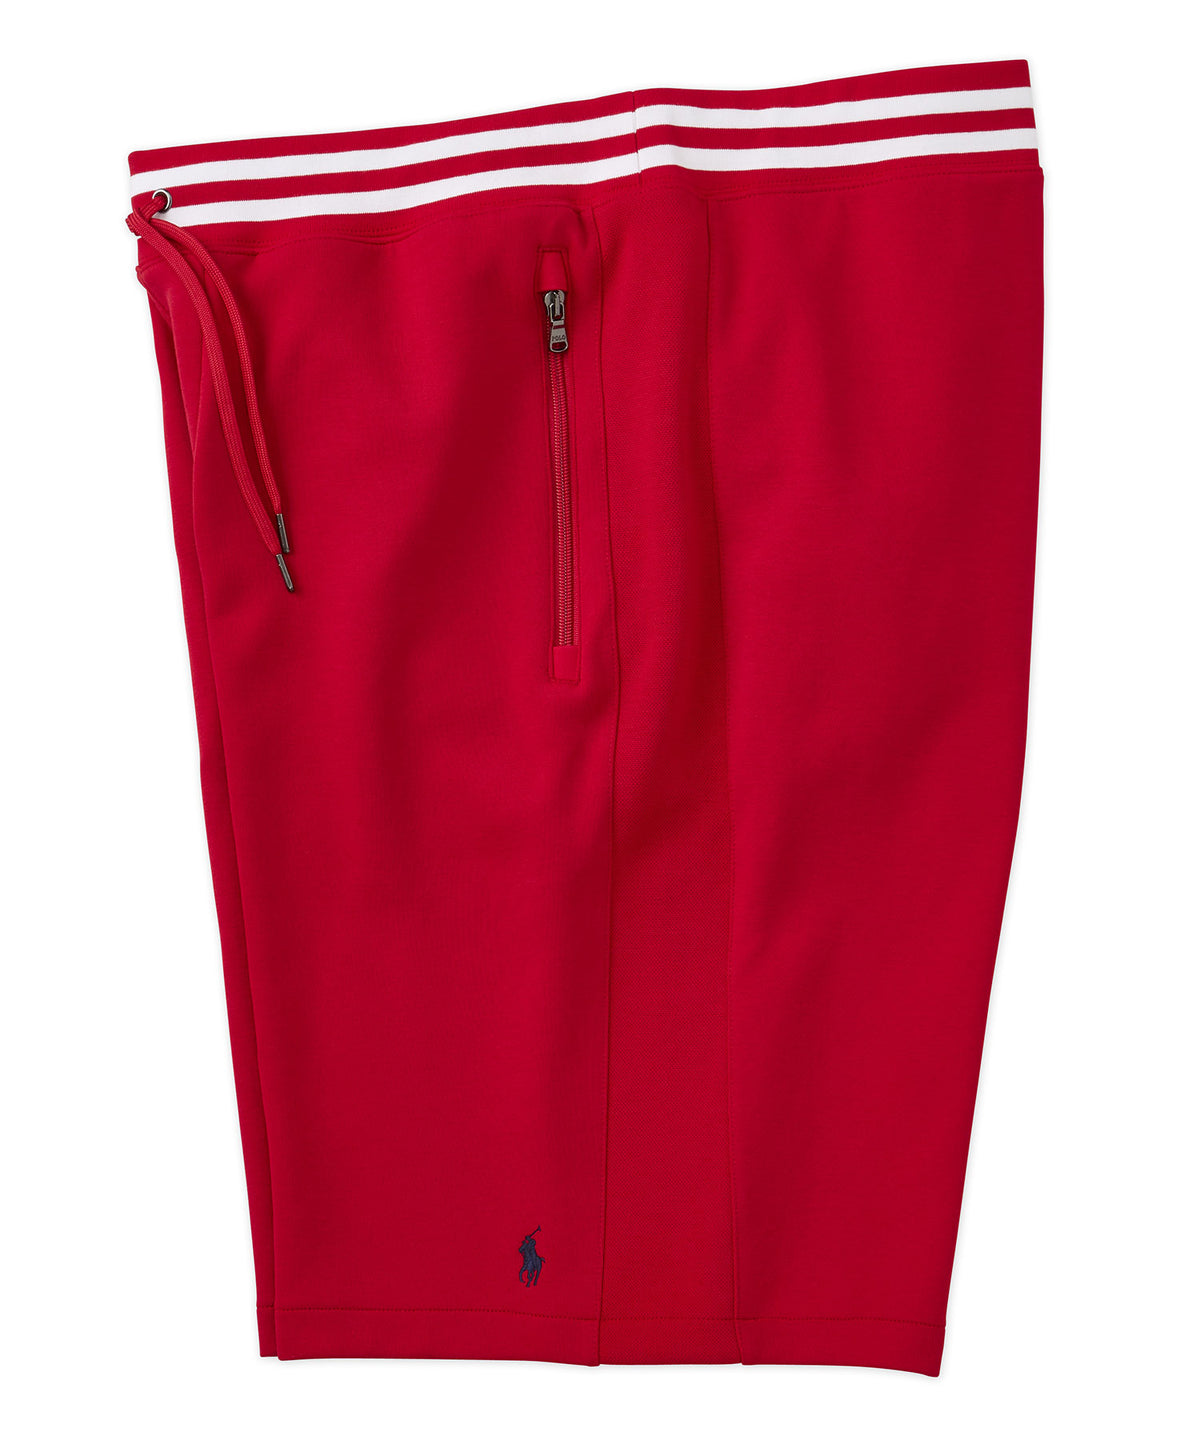 Pantaloncini tecnici Polo Ralph Lauren in maglia doppia maglia, Men's Big & Tall